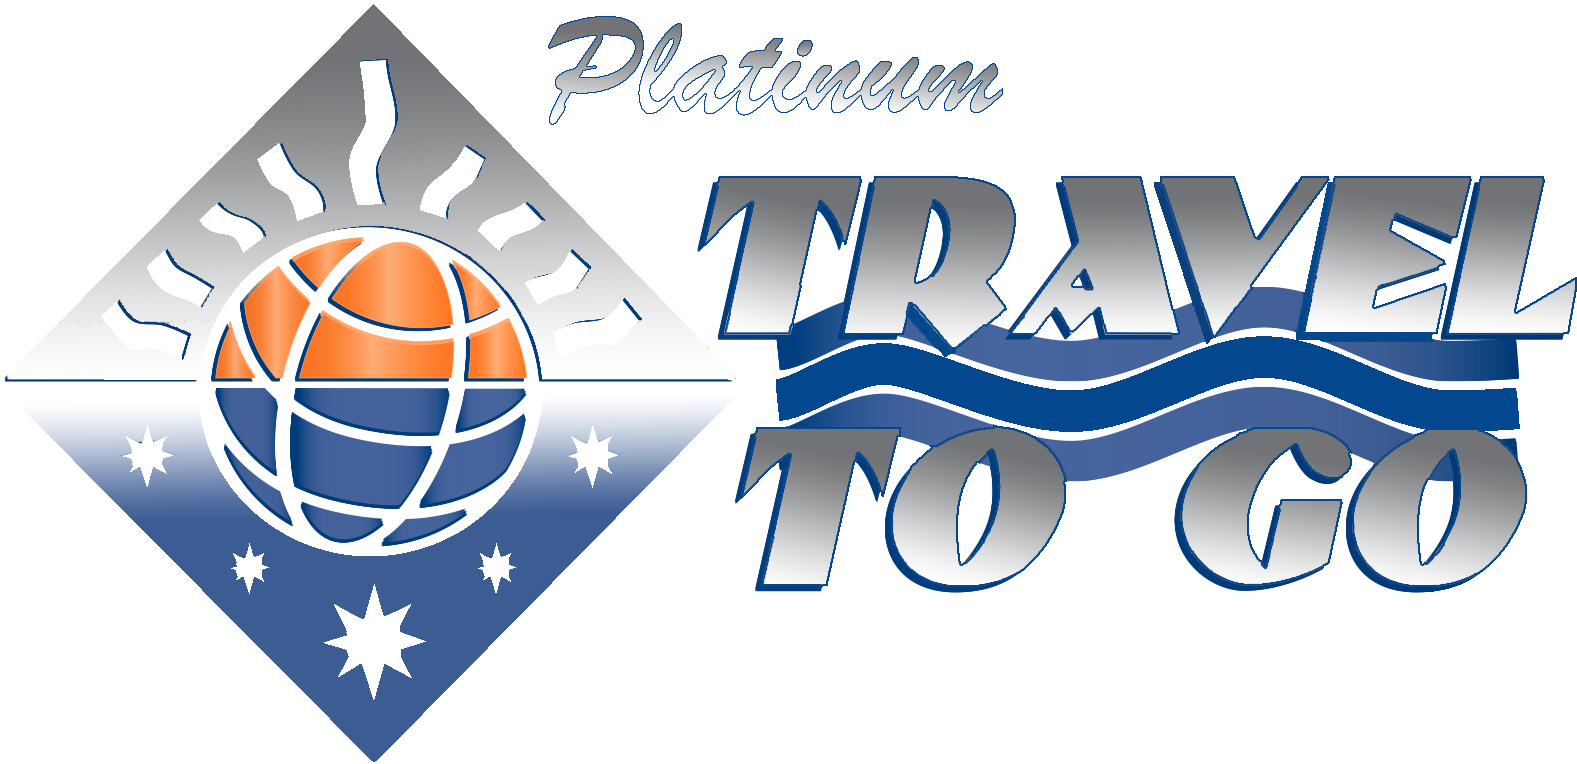 Platinum Travel To Go